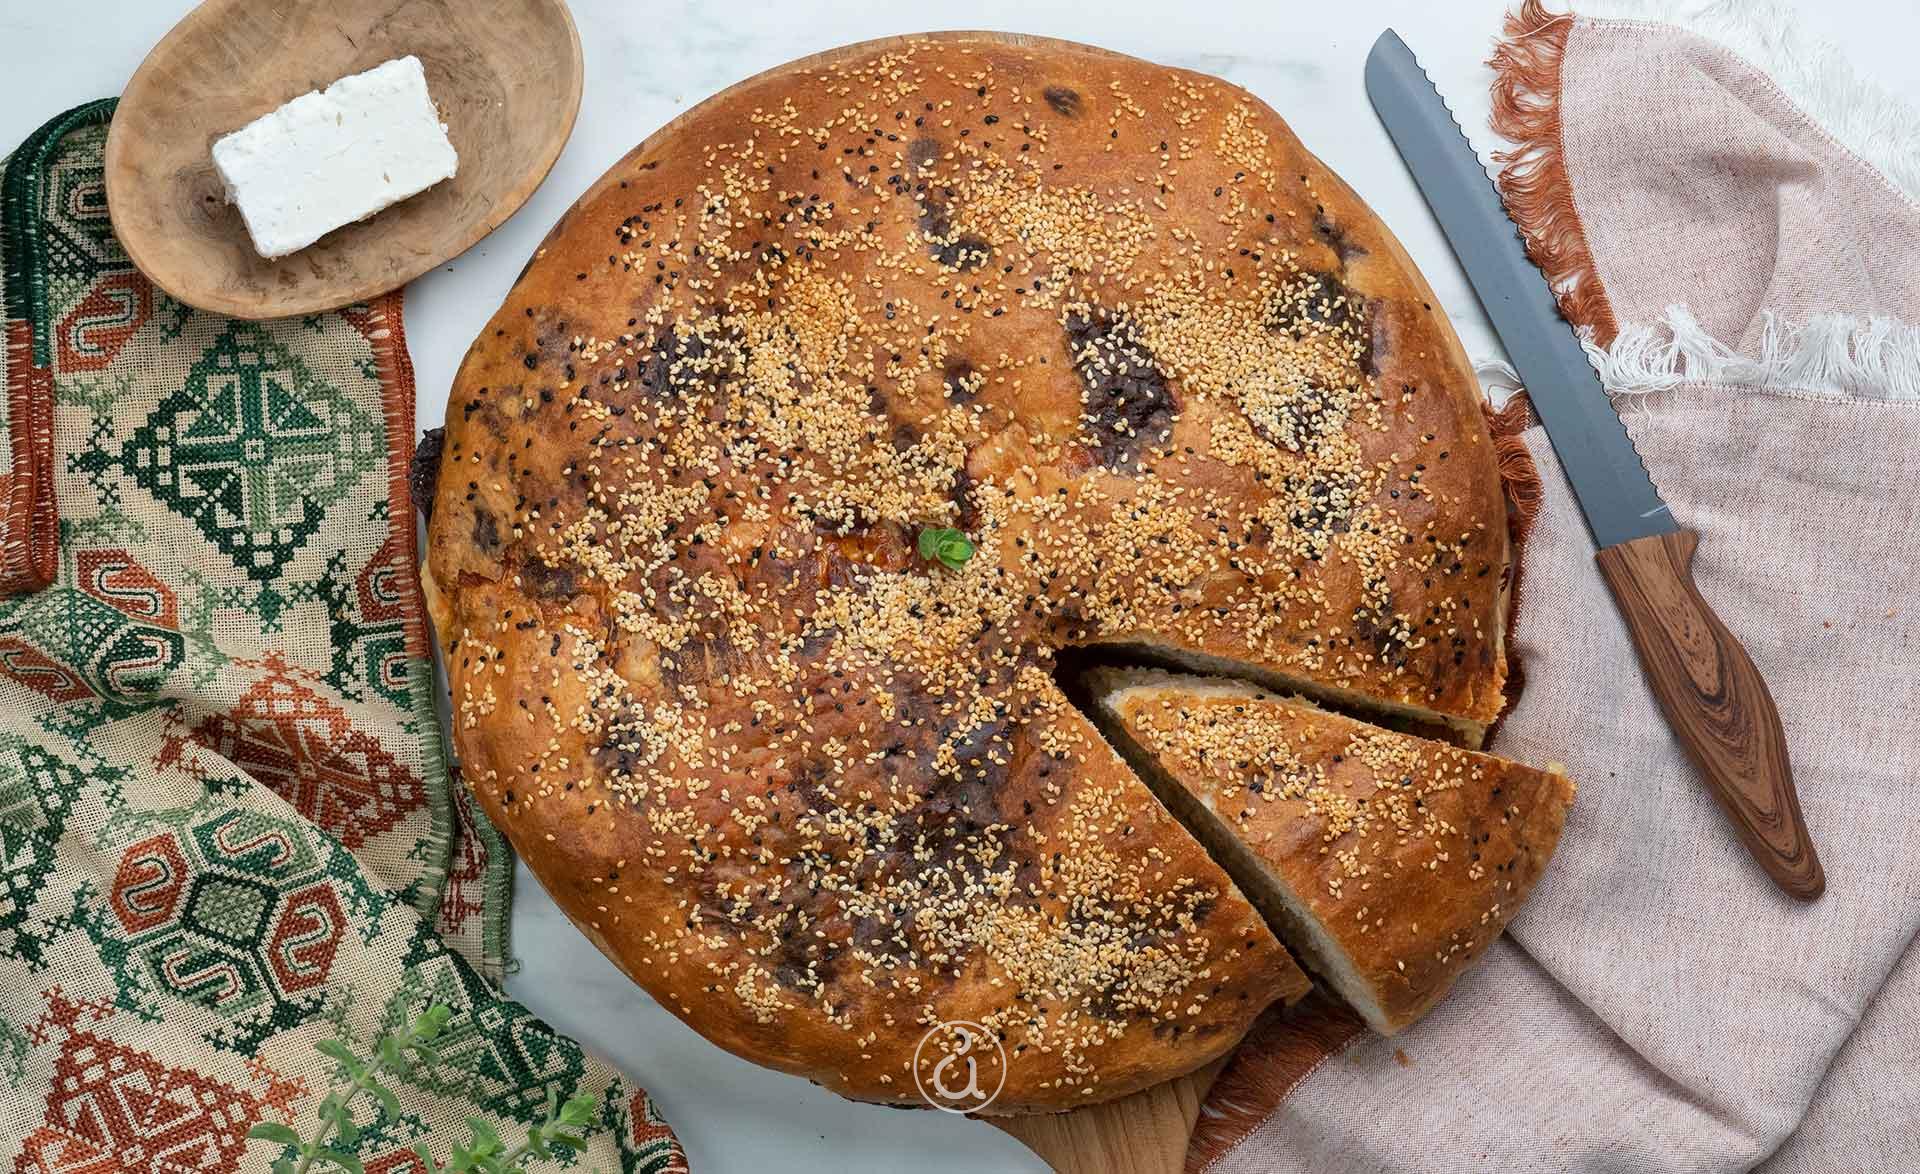 Αργυρώ Μπαρμπαρίγου | Εύκολη και νόστιμη τυρόπιτα Θράκης με σπιτική χειροποίητη ζύμη! Δοκιμάστε το! τυρόψωμο Θράκης